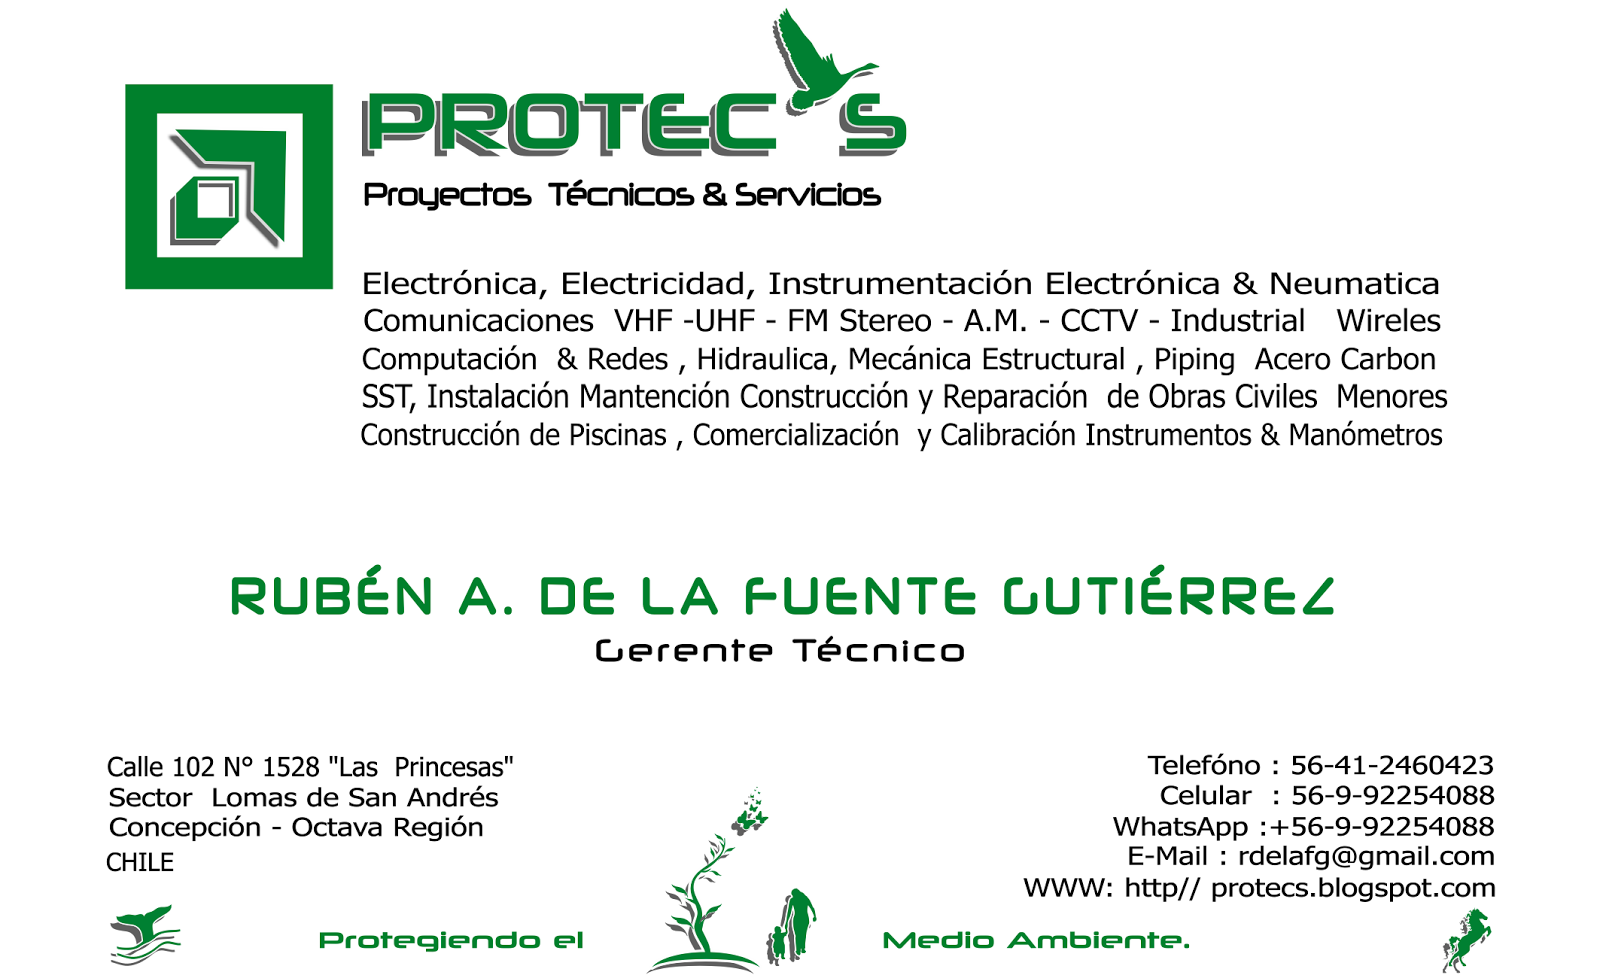 PROTECS (Proyectos Tecnicos & Servicios)